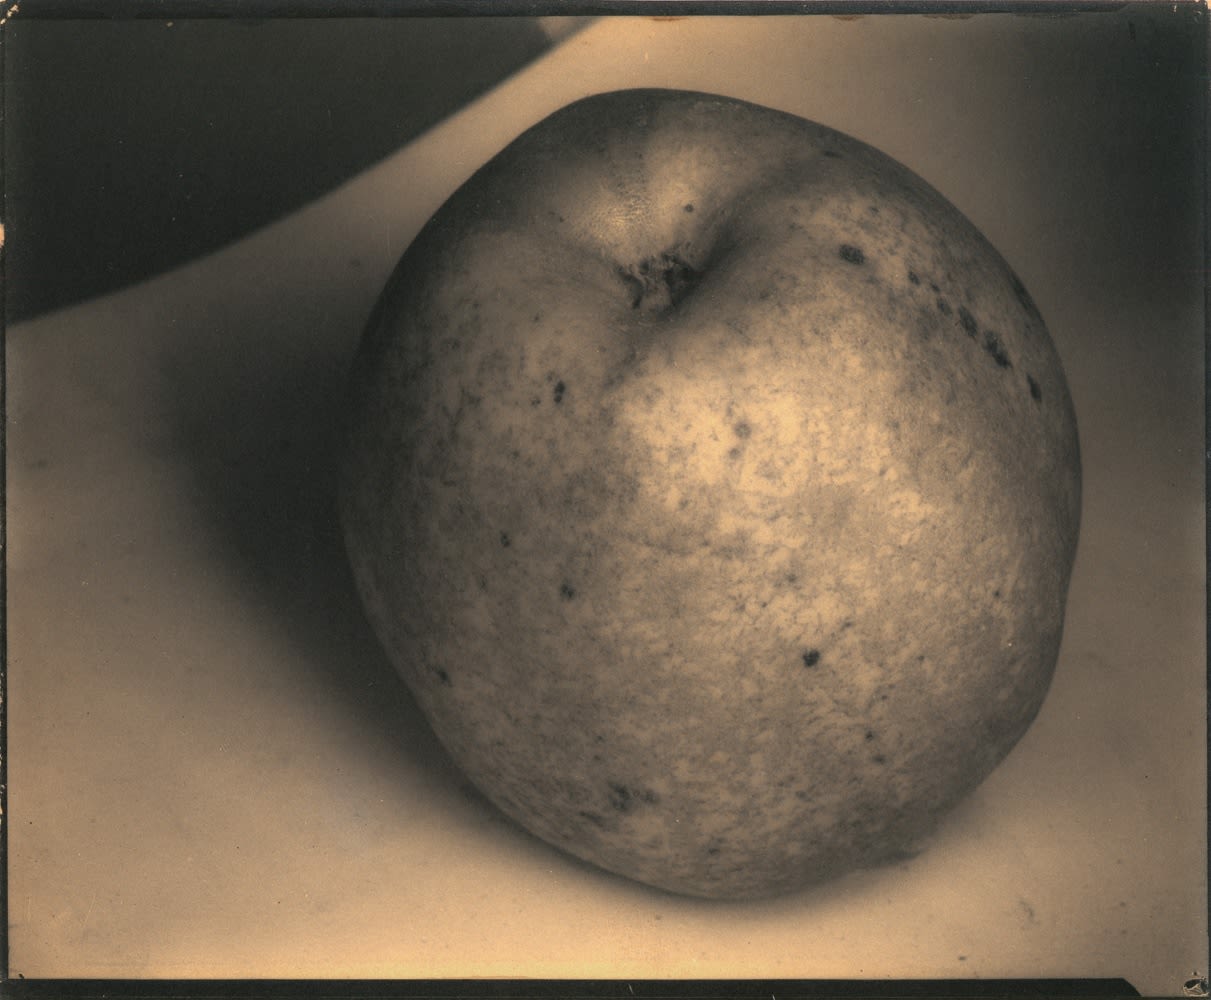 Edward Steichen, Still Life - An Apple, a Boulder, a Mountain - France, c. 1921